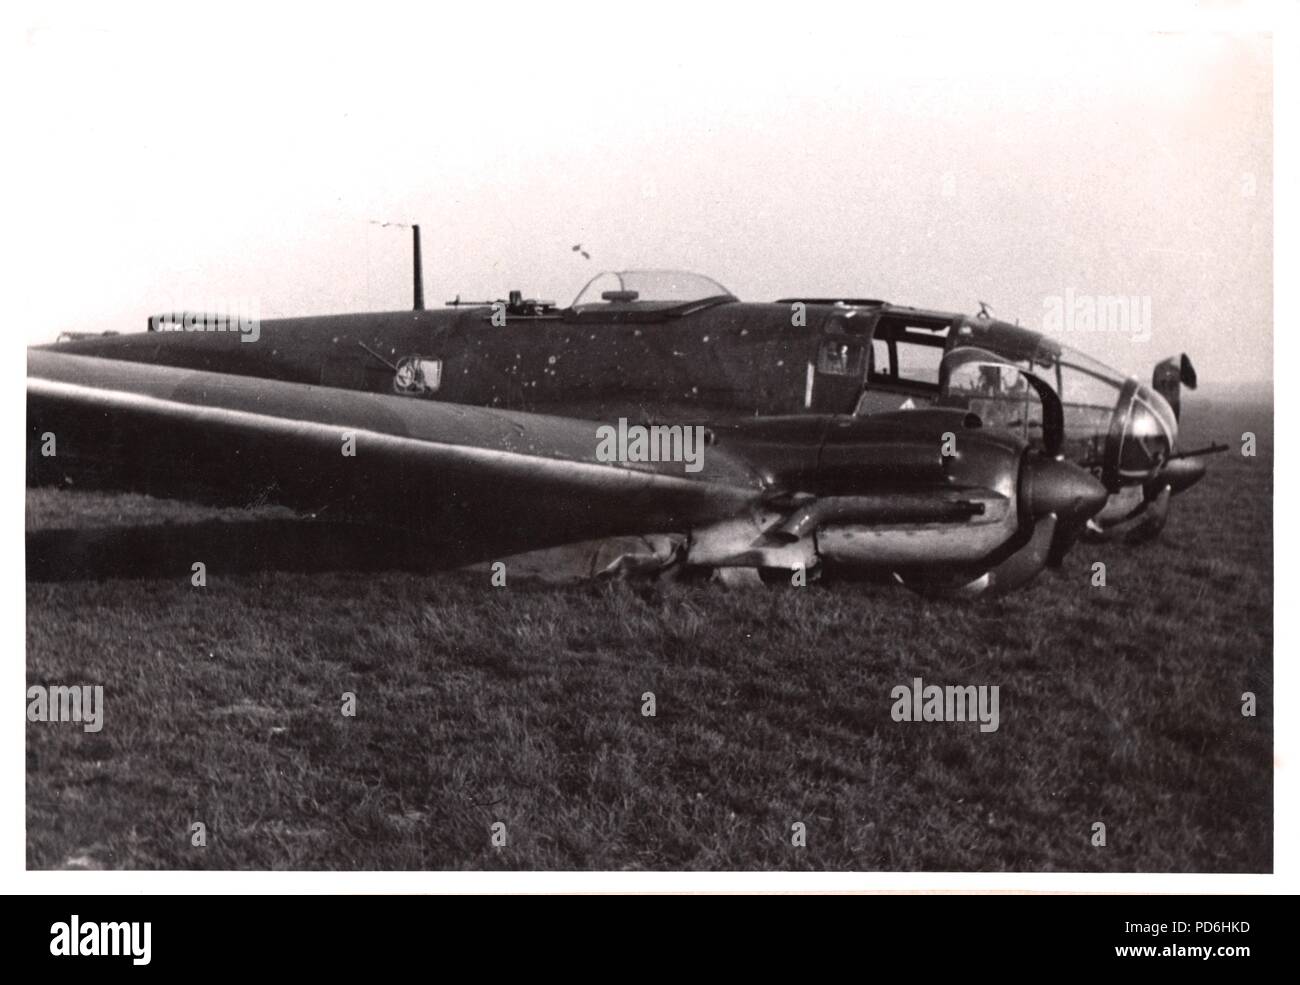 Bild aus dem Fotoalbum von Oberleutnant Oscar Müller von kampfgeschwader 1: Heinkel He 111 H-2 (Wrk Nr.2728) V4 + CV von 5./KG 1 bei Harchies in Belgien nach Kraft - von Leutnant Oscar Müller in der Nacht vom 16./17. Oktober 1940 als Ergebnis der Flak Schäden bei einem Ausfall über London während der Schlacht von Großbritannien erhielt gelandet. Die Crew der Leutnant Oscar Müller (Pilot), Feldwebel Küchler (Beobachter), Feldwebel Henke (Radio Operator) und Unteroffizier Georg Schneiderbanger (Flight Engineer) waren alle unverletzt, aber der Flugzeuge wurde abgeschrieben. Stockfoto